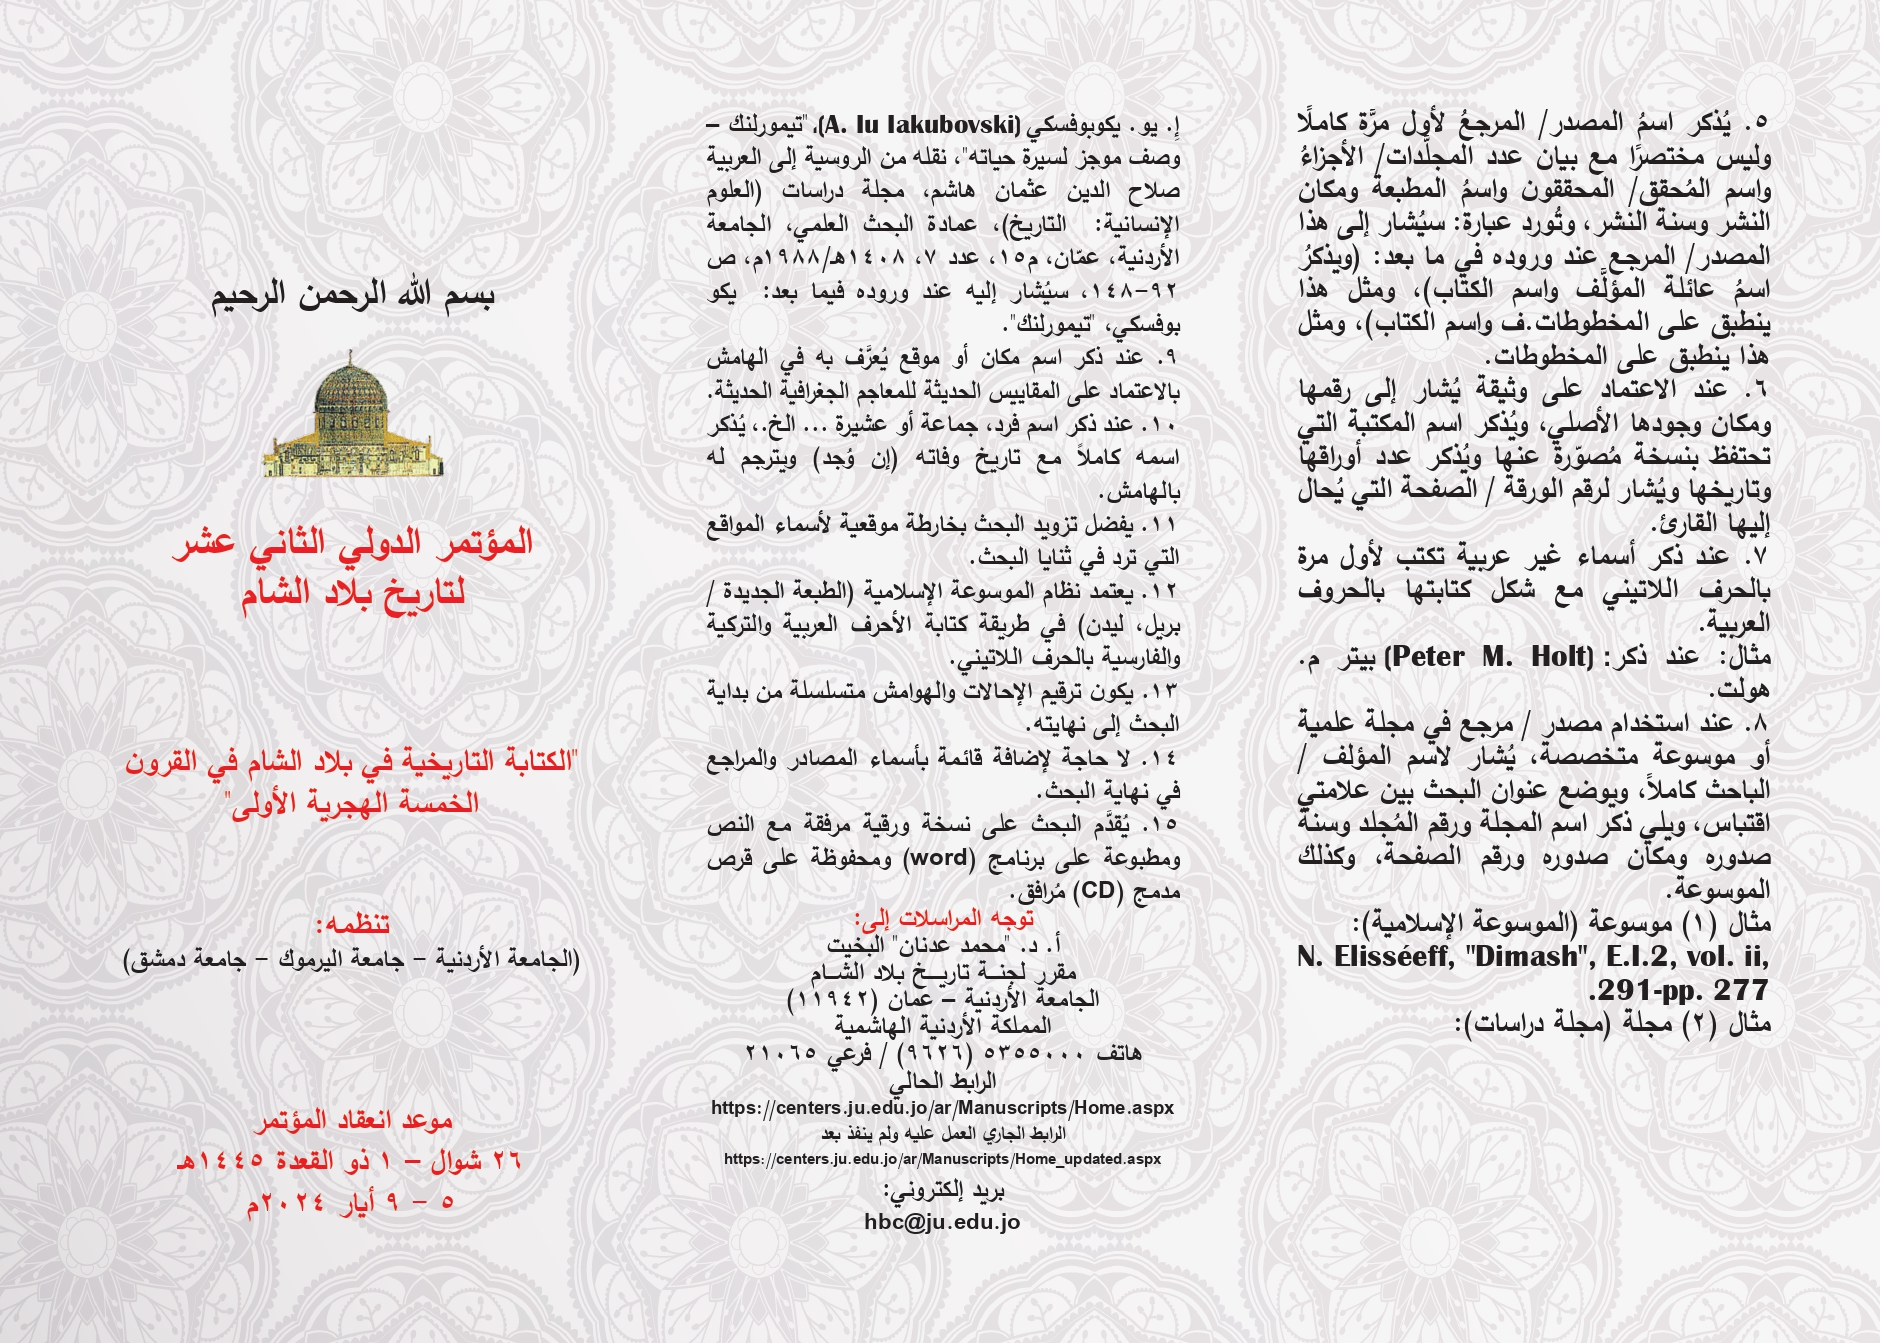 مطوية 2- المؤتمر الدولي الثاني عشر لتاريخ بلاد الشام (2)_page-0001.jpg